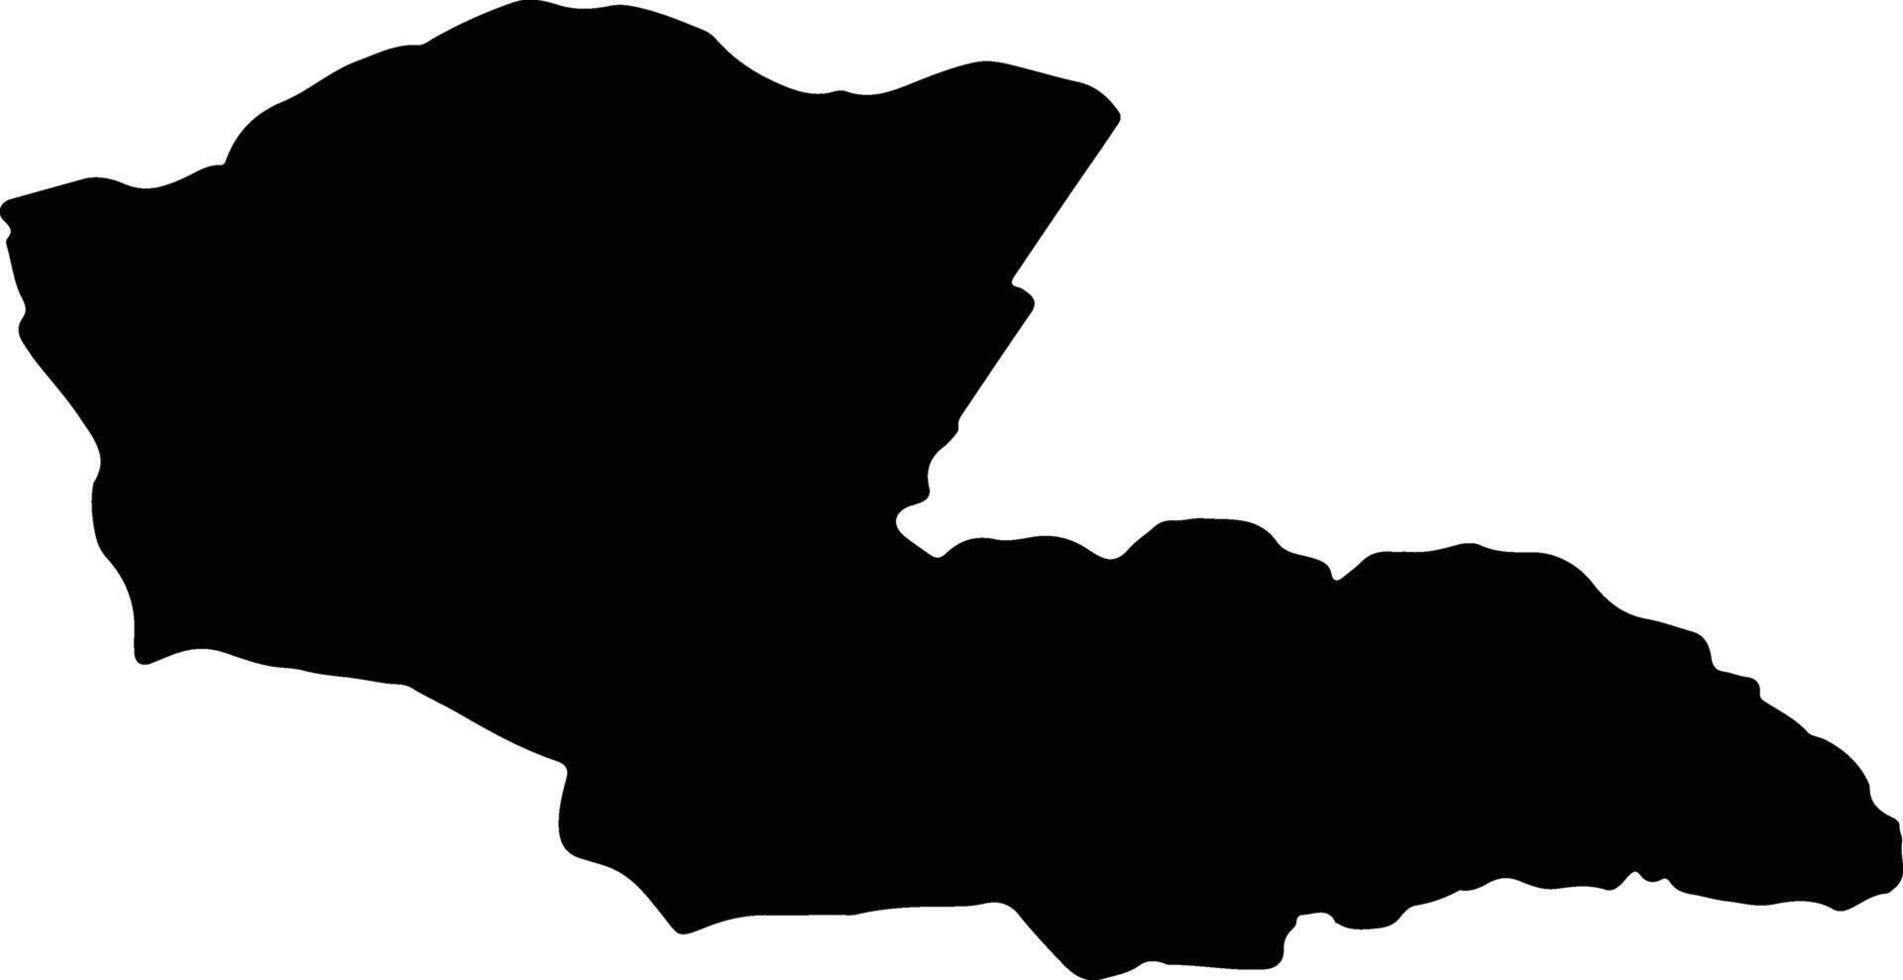 Dornod Mongolia silhouette carta geografica vettore